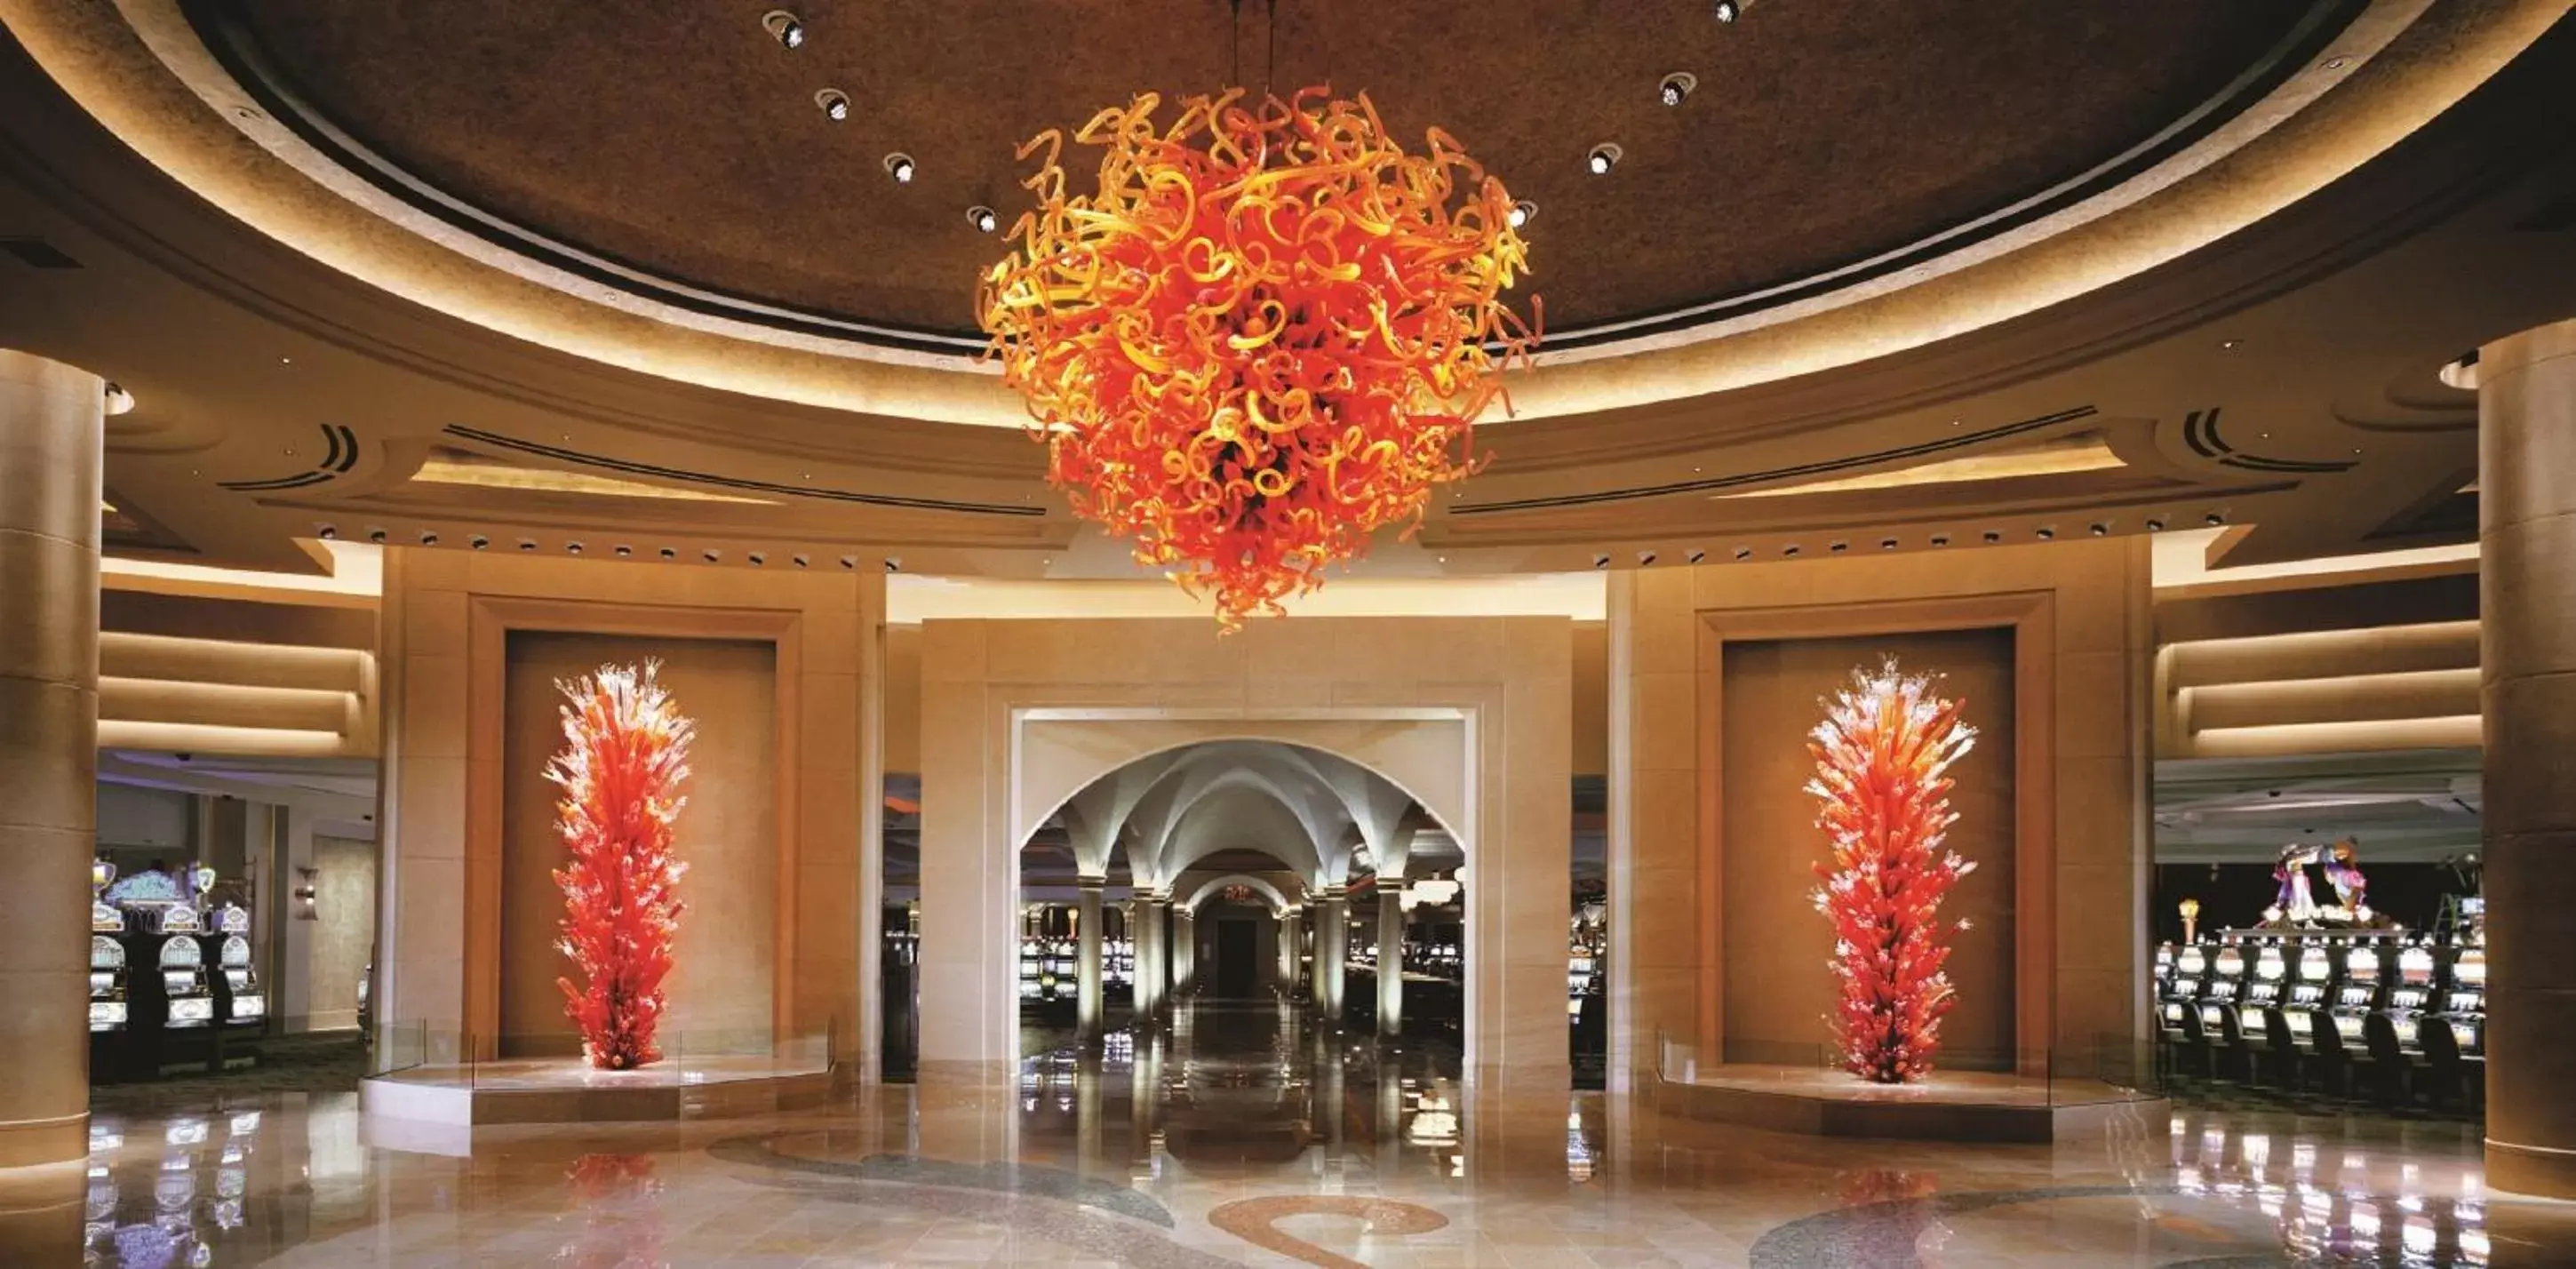 Lobby or reception in Borgata Hotel Casino & Spa